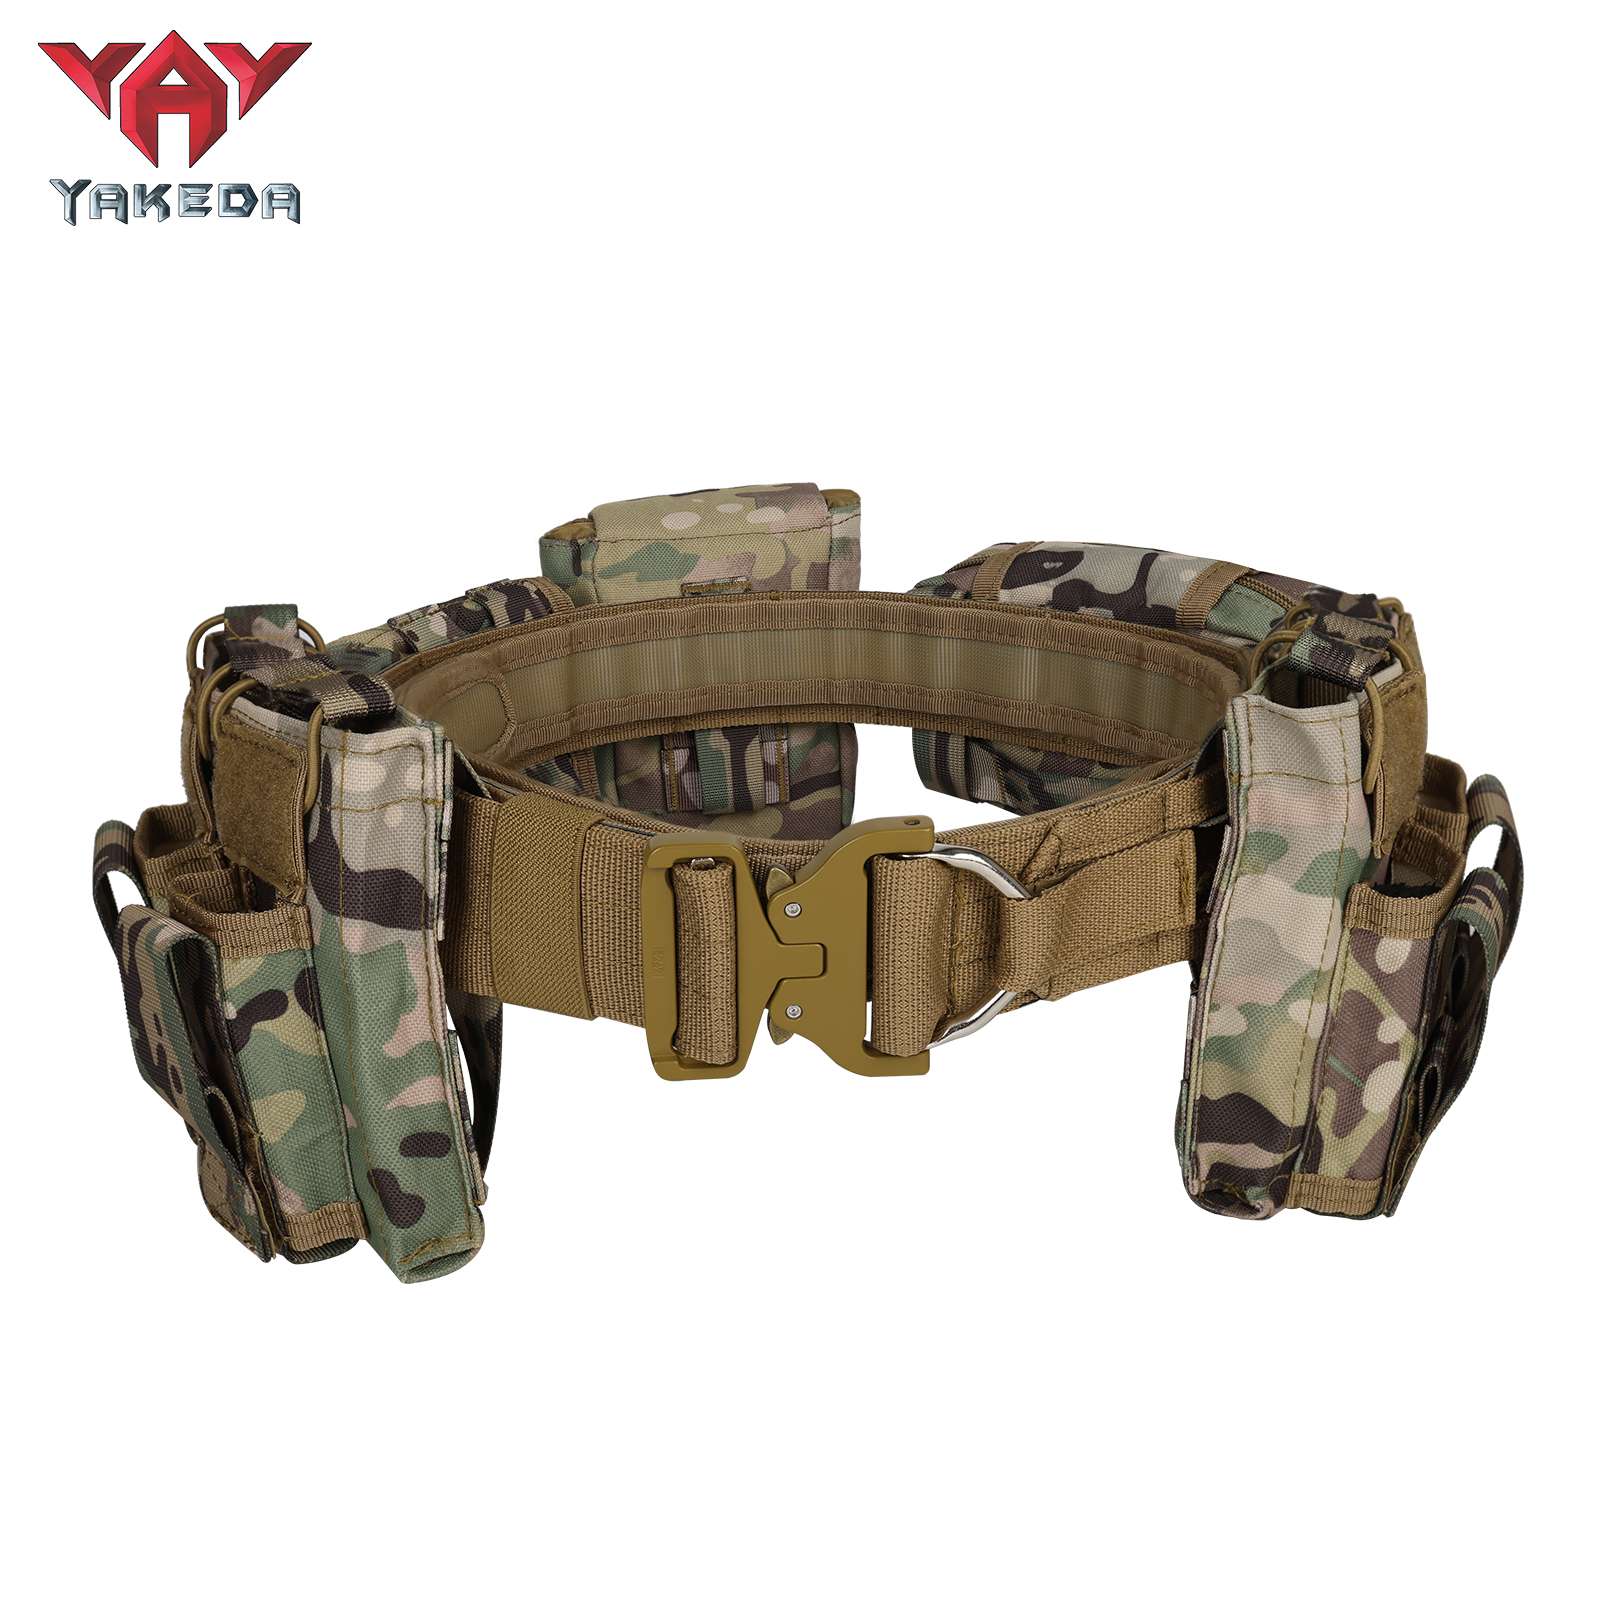 Yakeda MOLLE cinturón de batalla de combate de liberación rápida con bolsas cinturón interior y exterior de servicio pesado conjunto de cinturón táctico